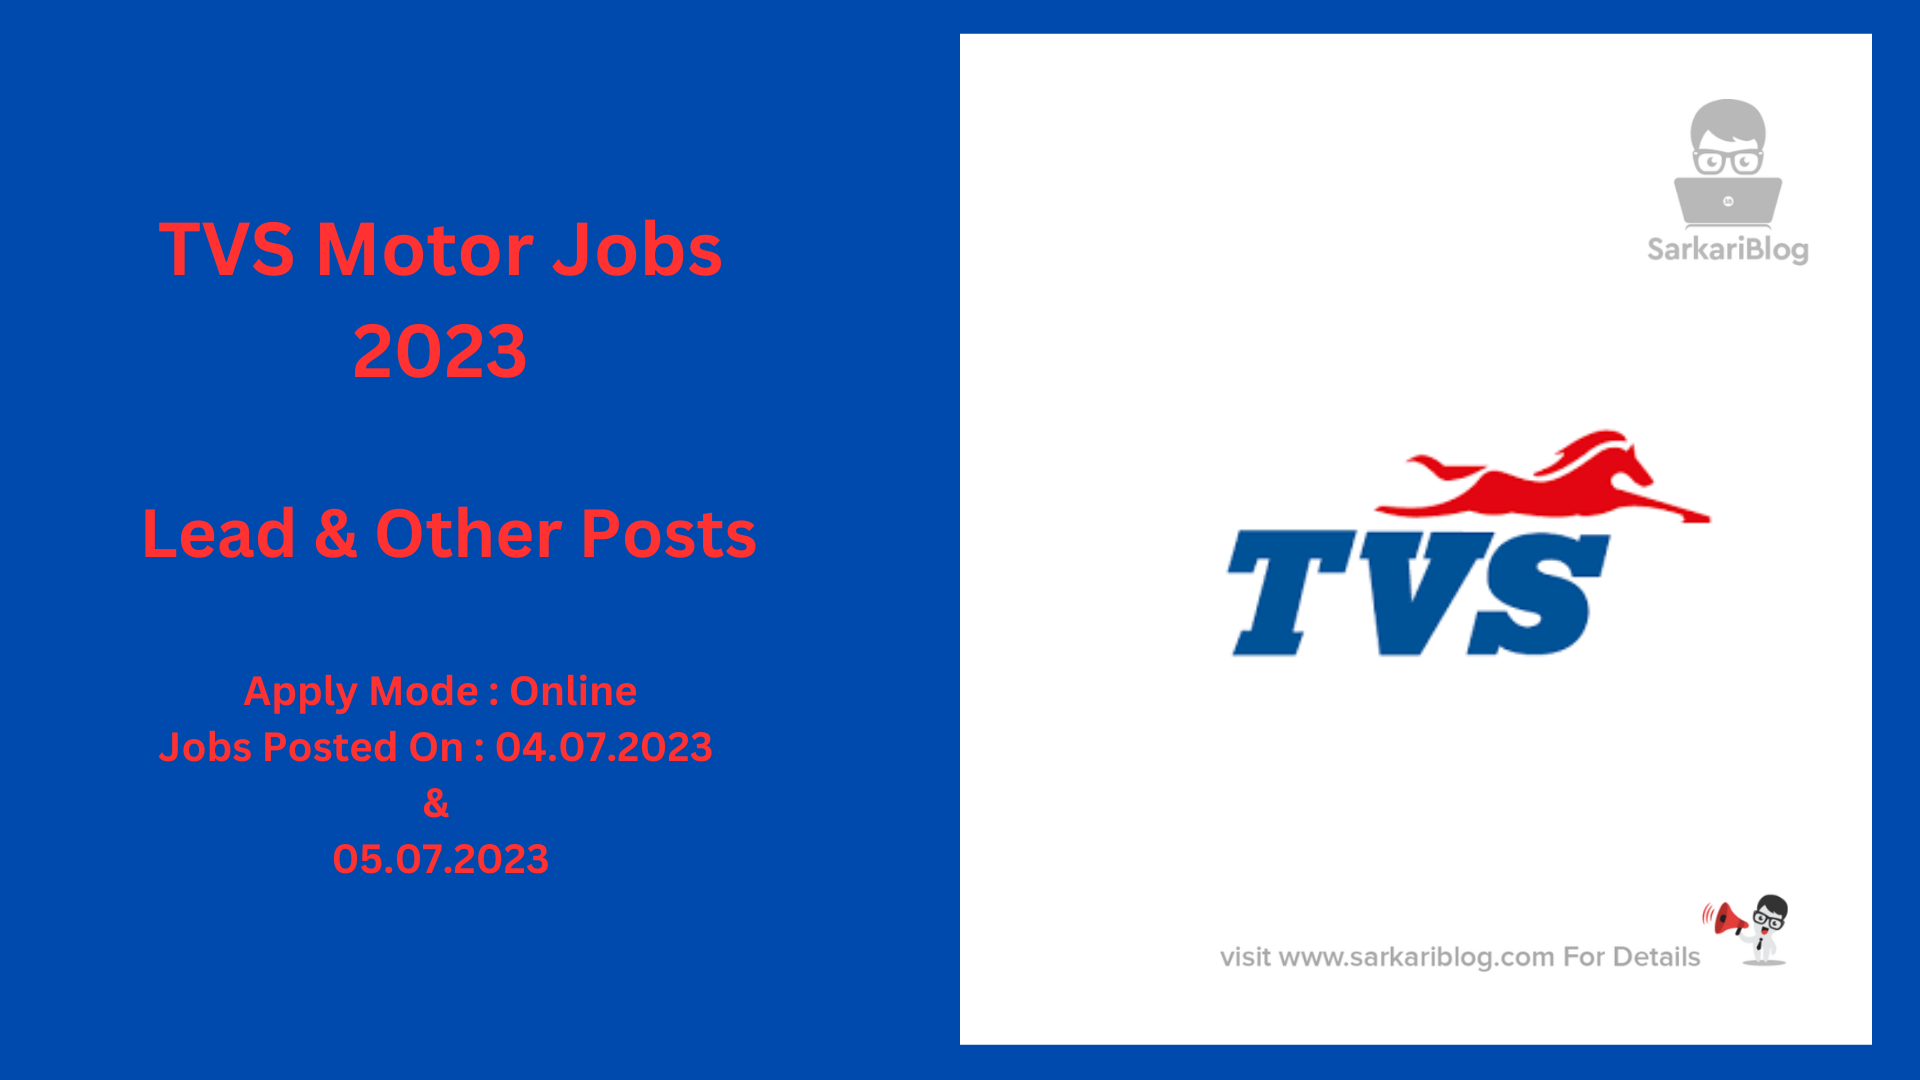 TVS Motor Jobs 2023